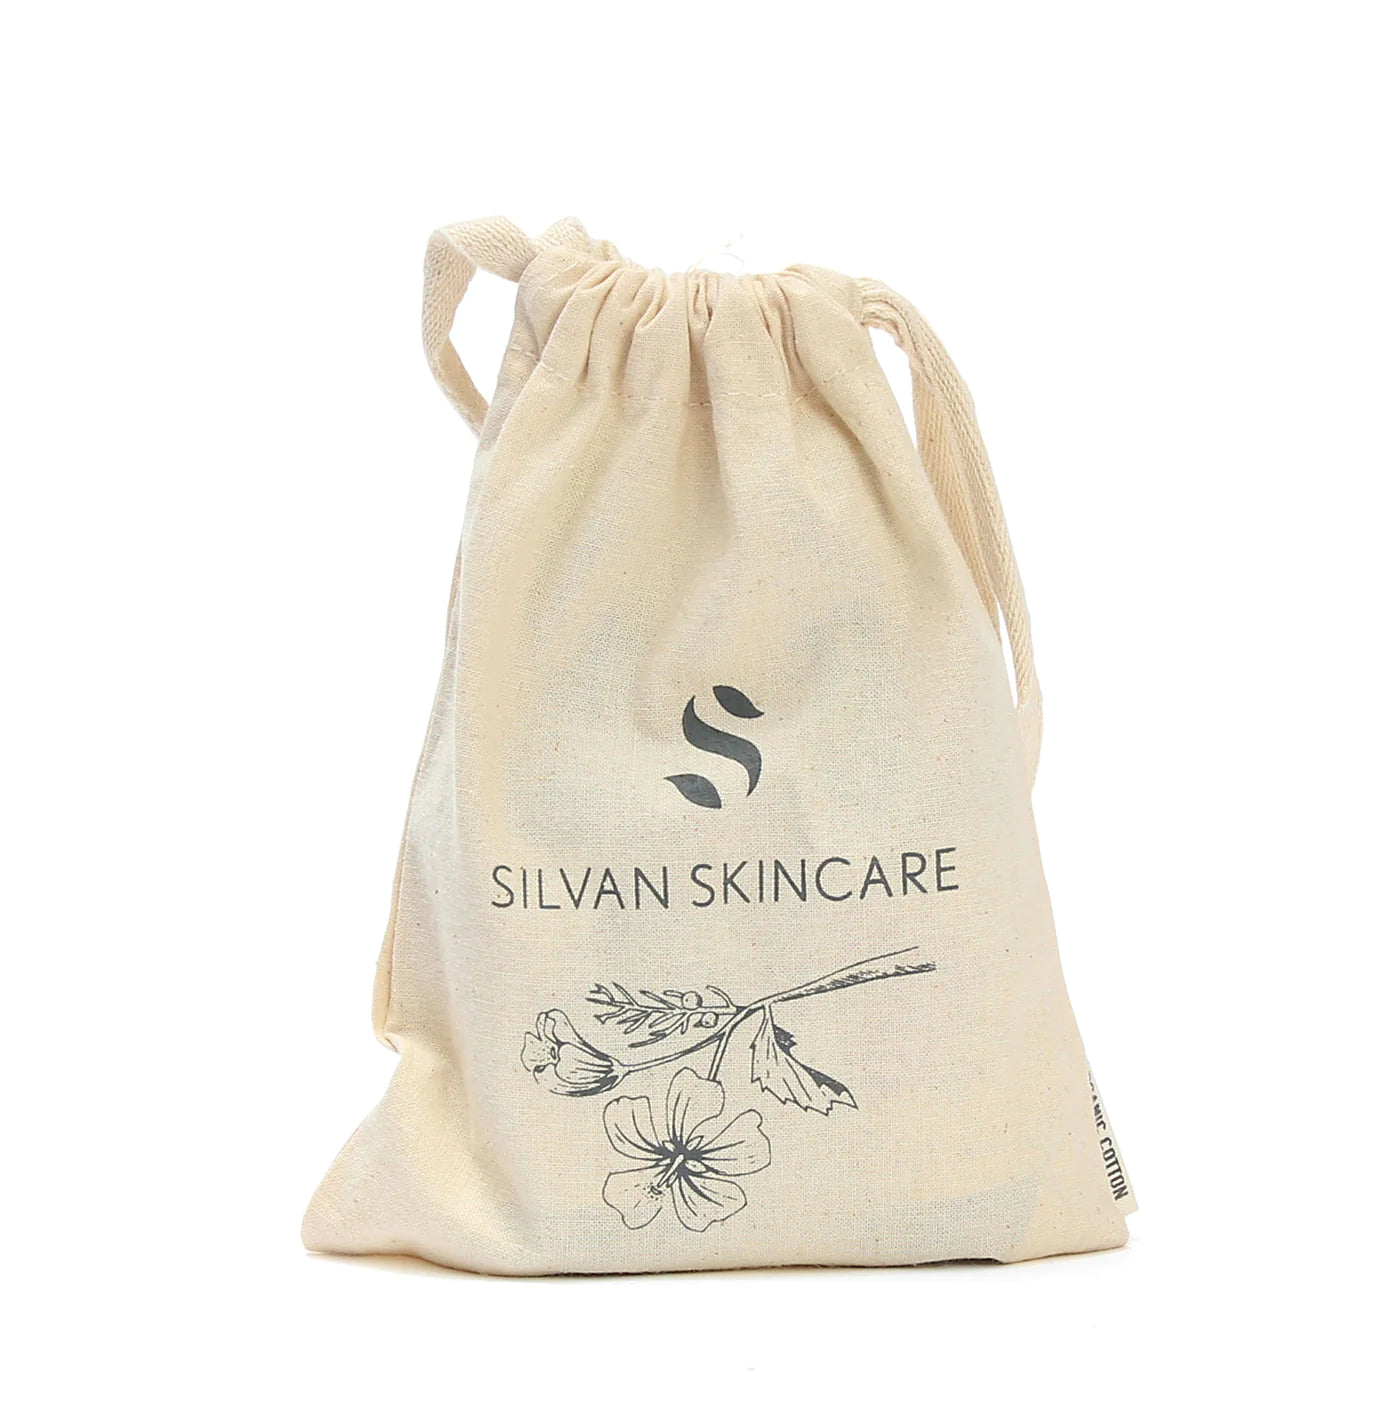 Silvan Skincare Gardener’s Gift Set